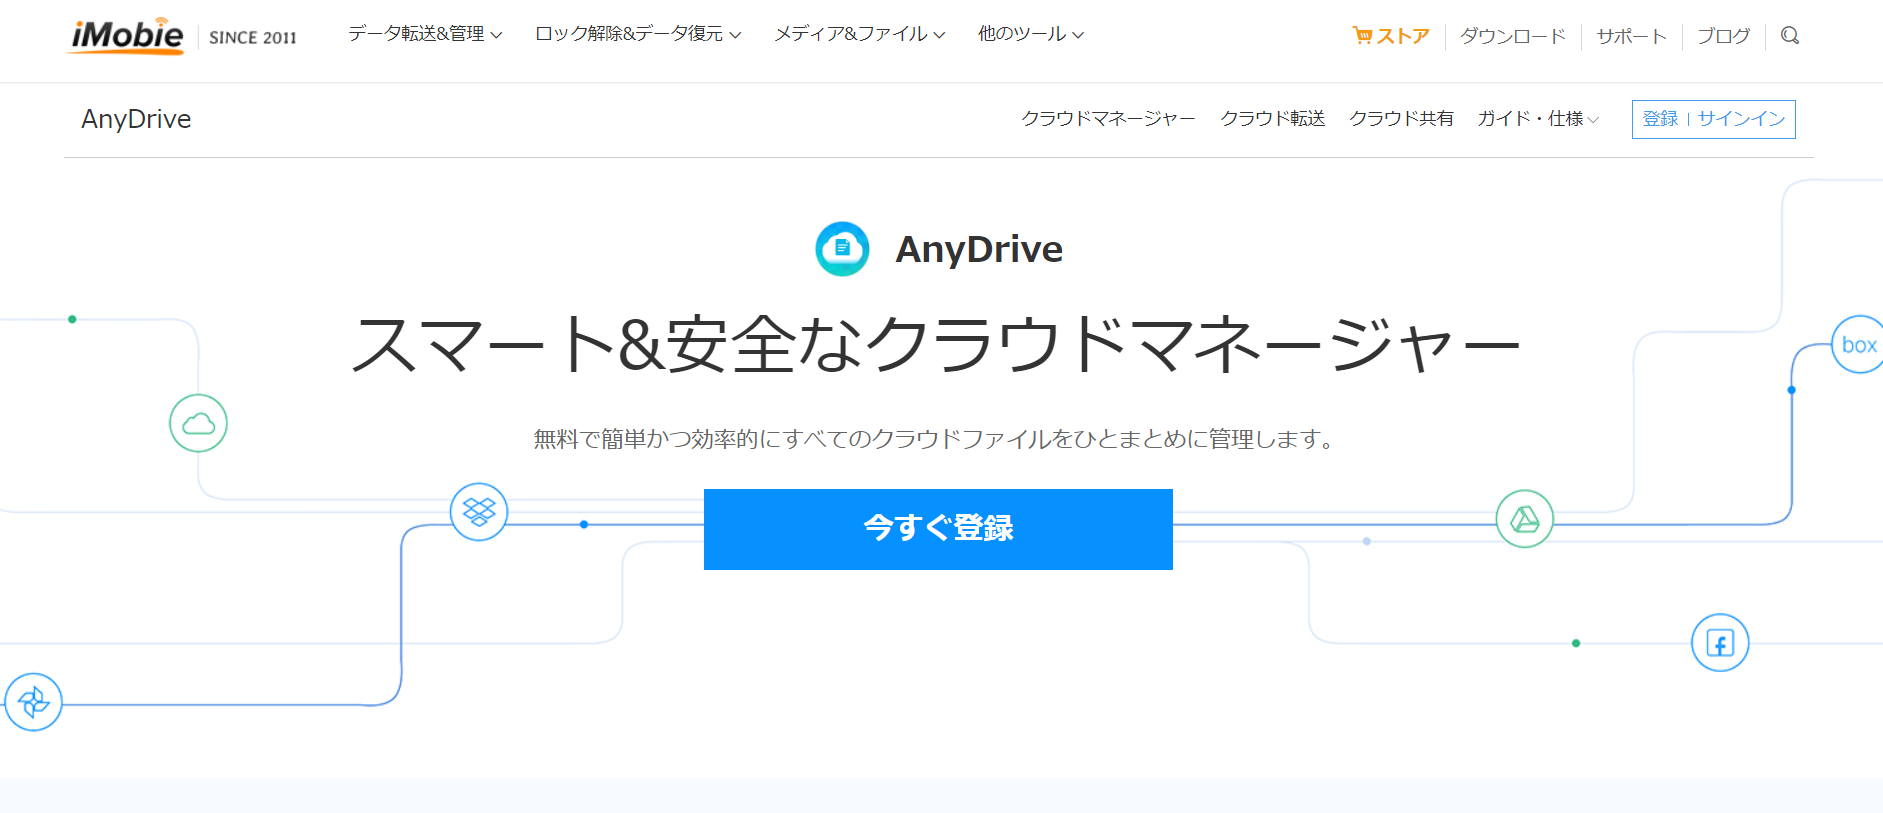 AnyDriveのトップ画像